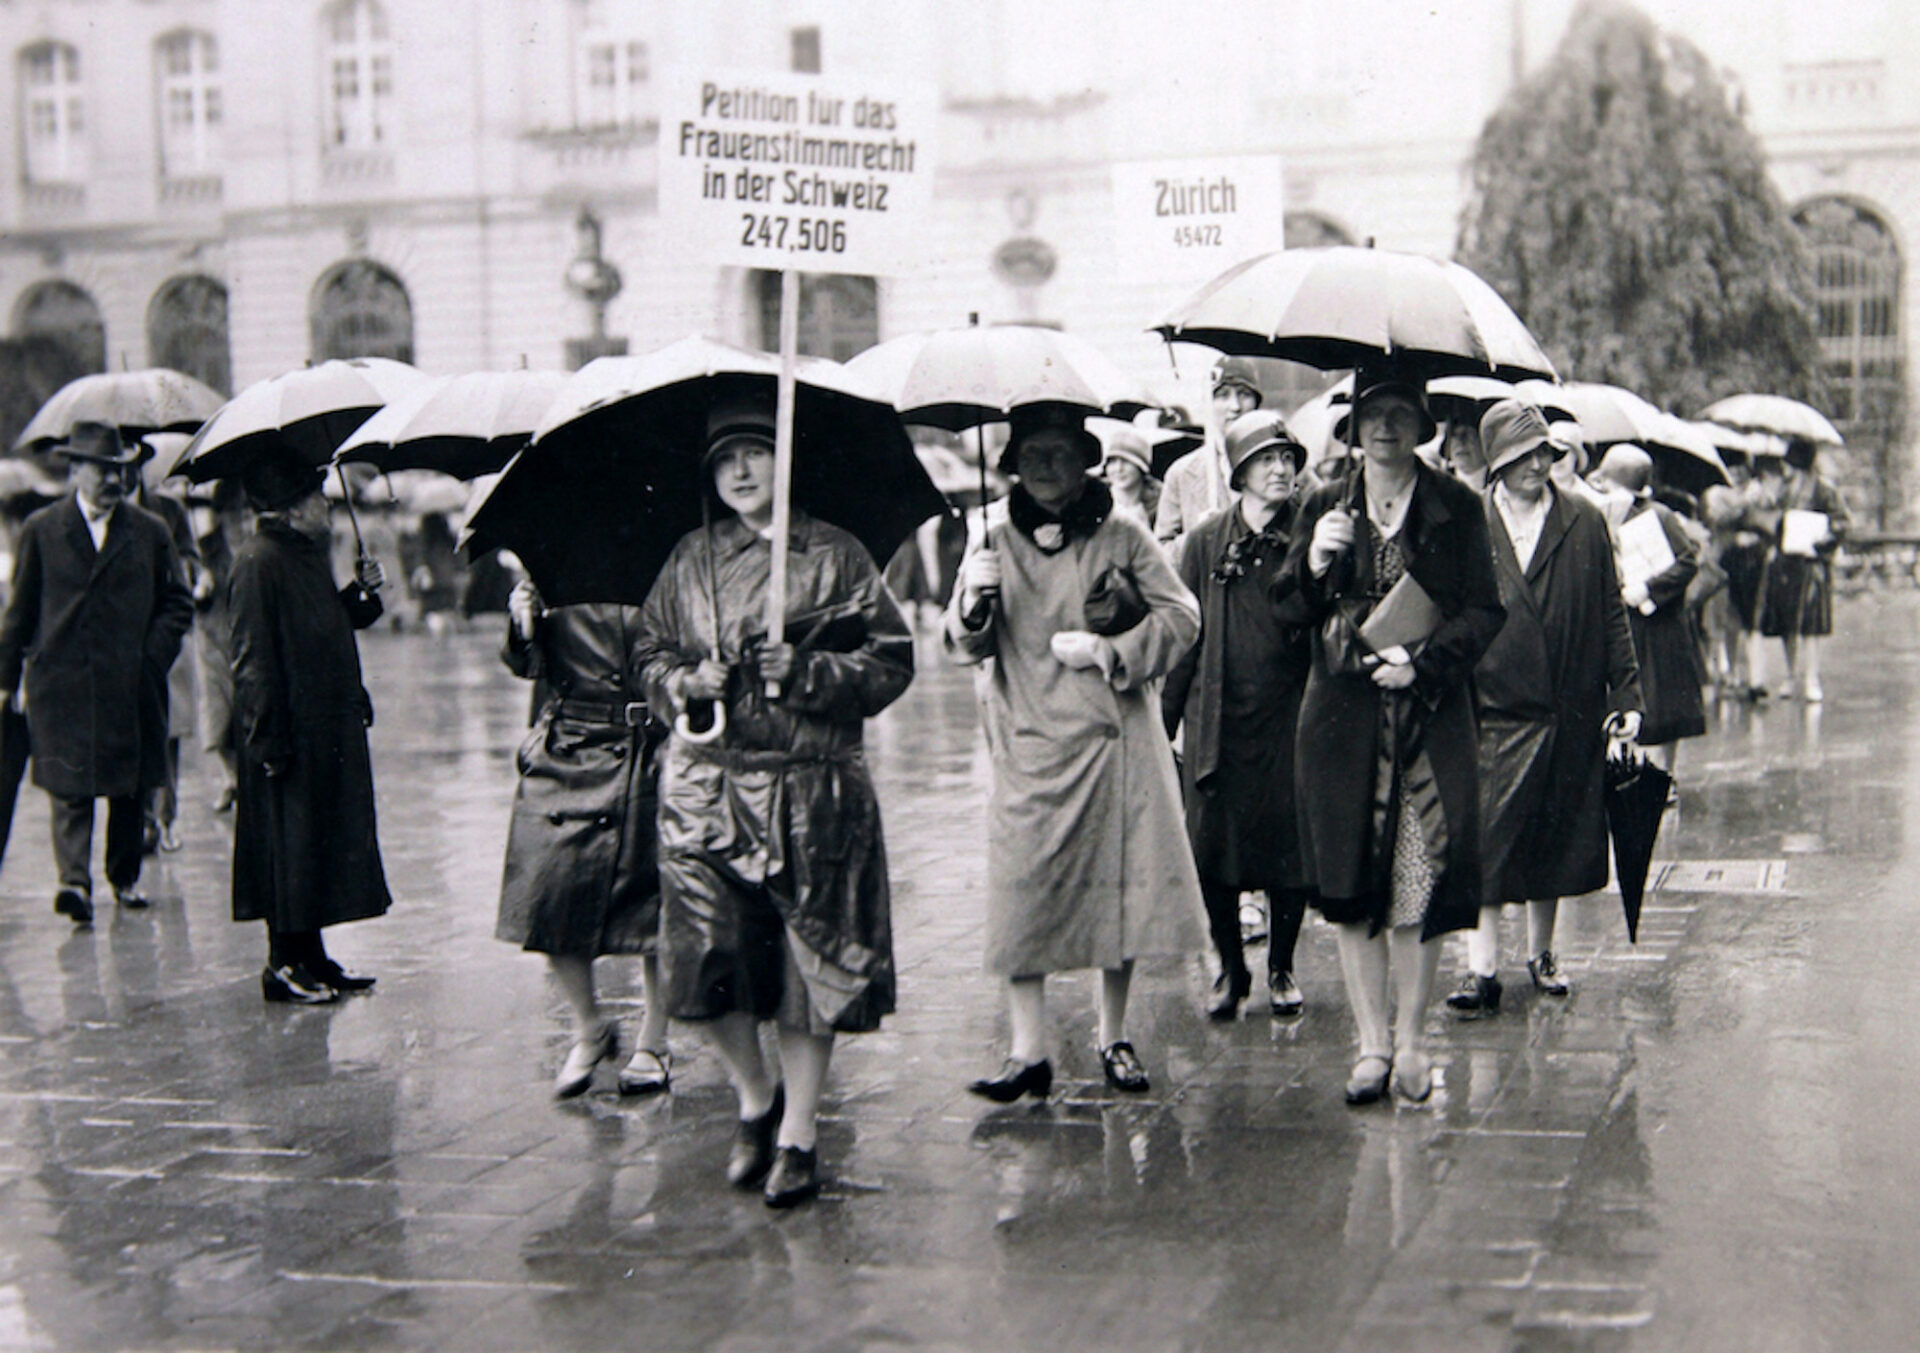 Petition für das Frauenstimmrecht 1929